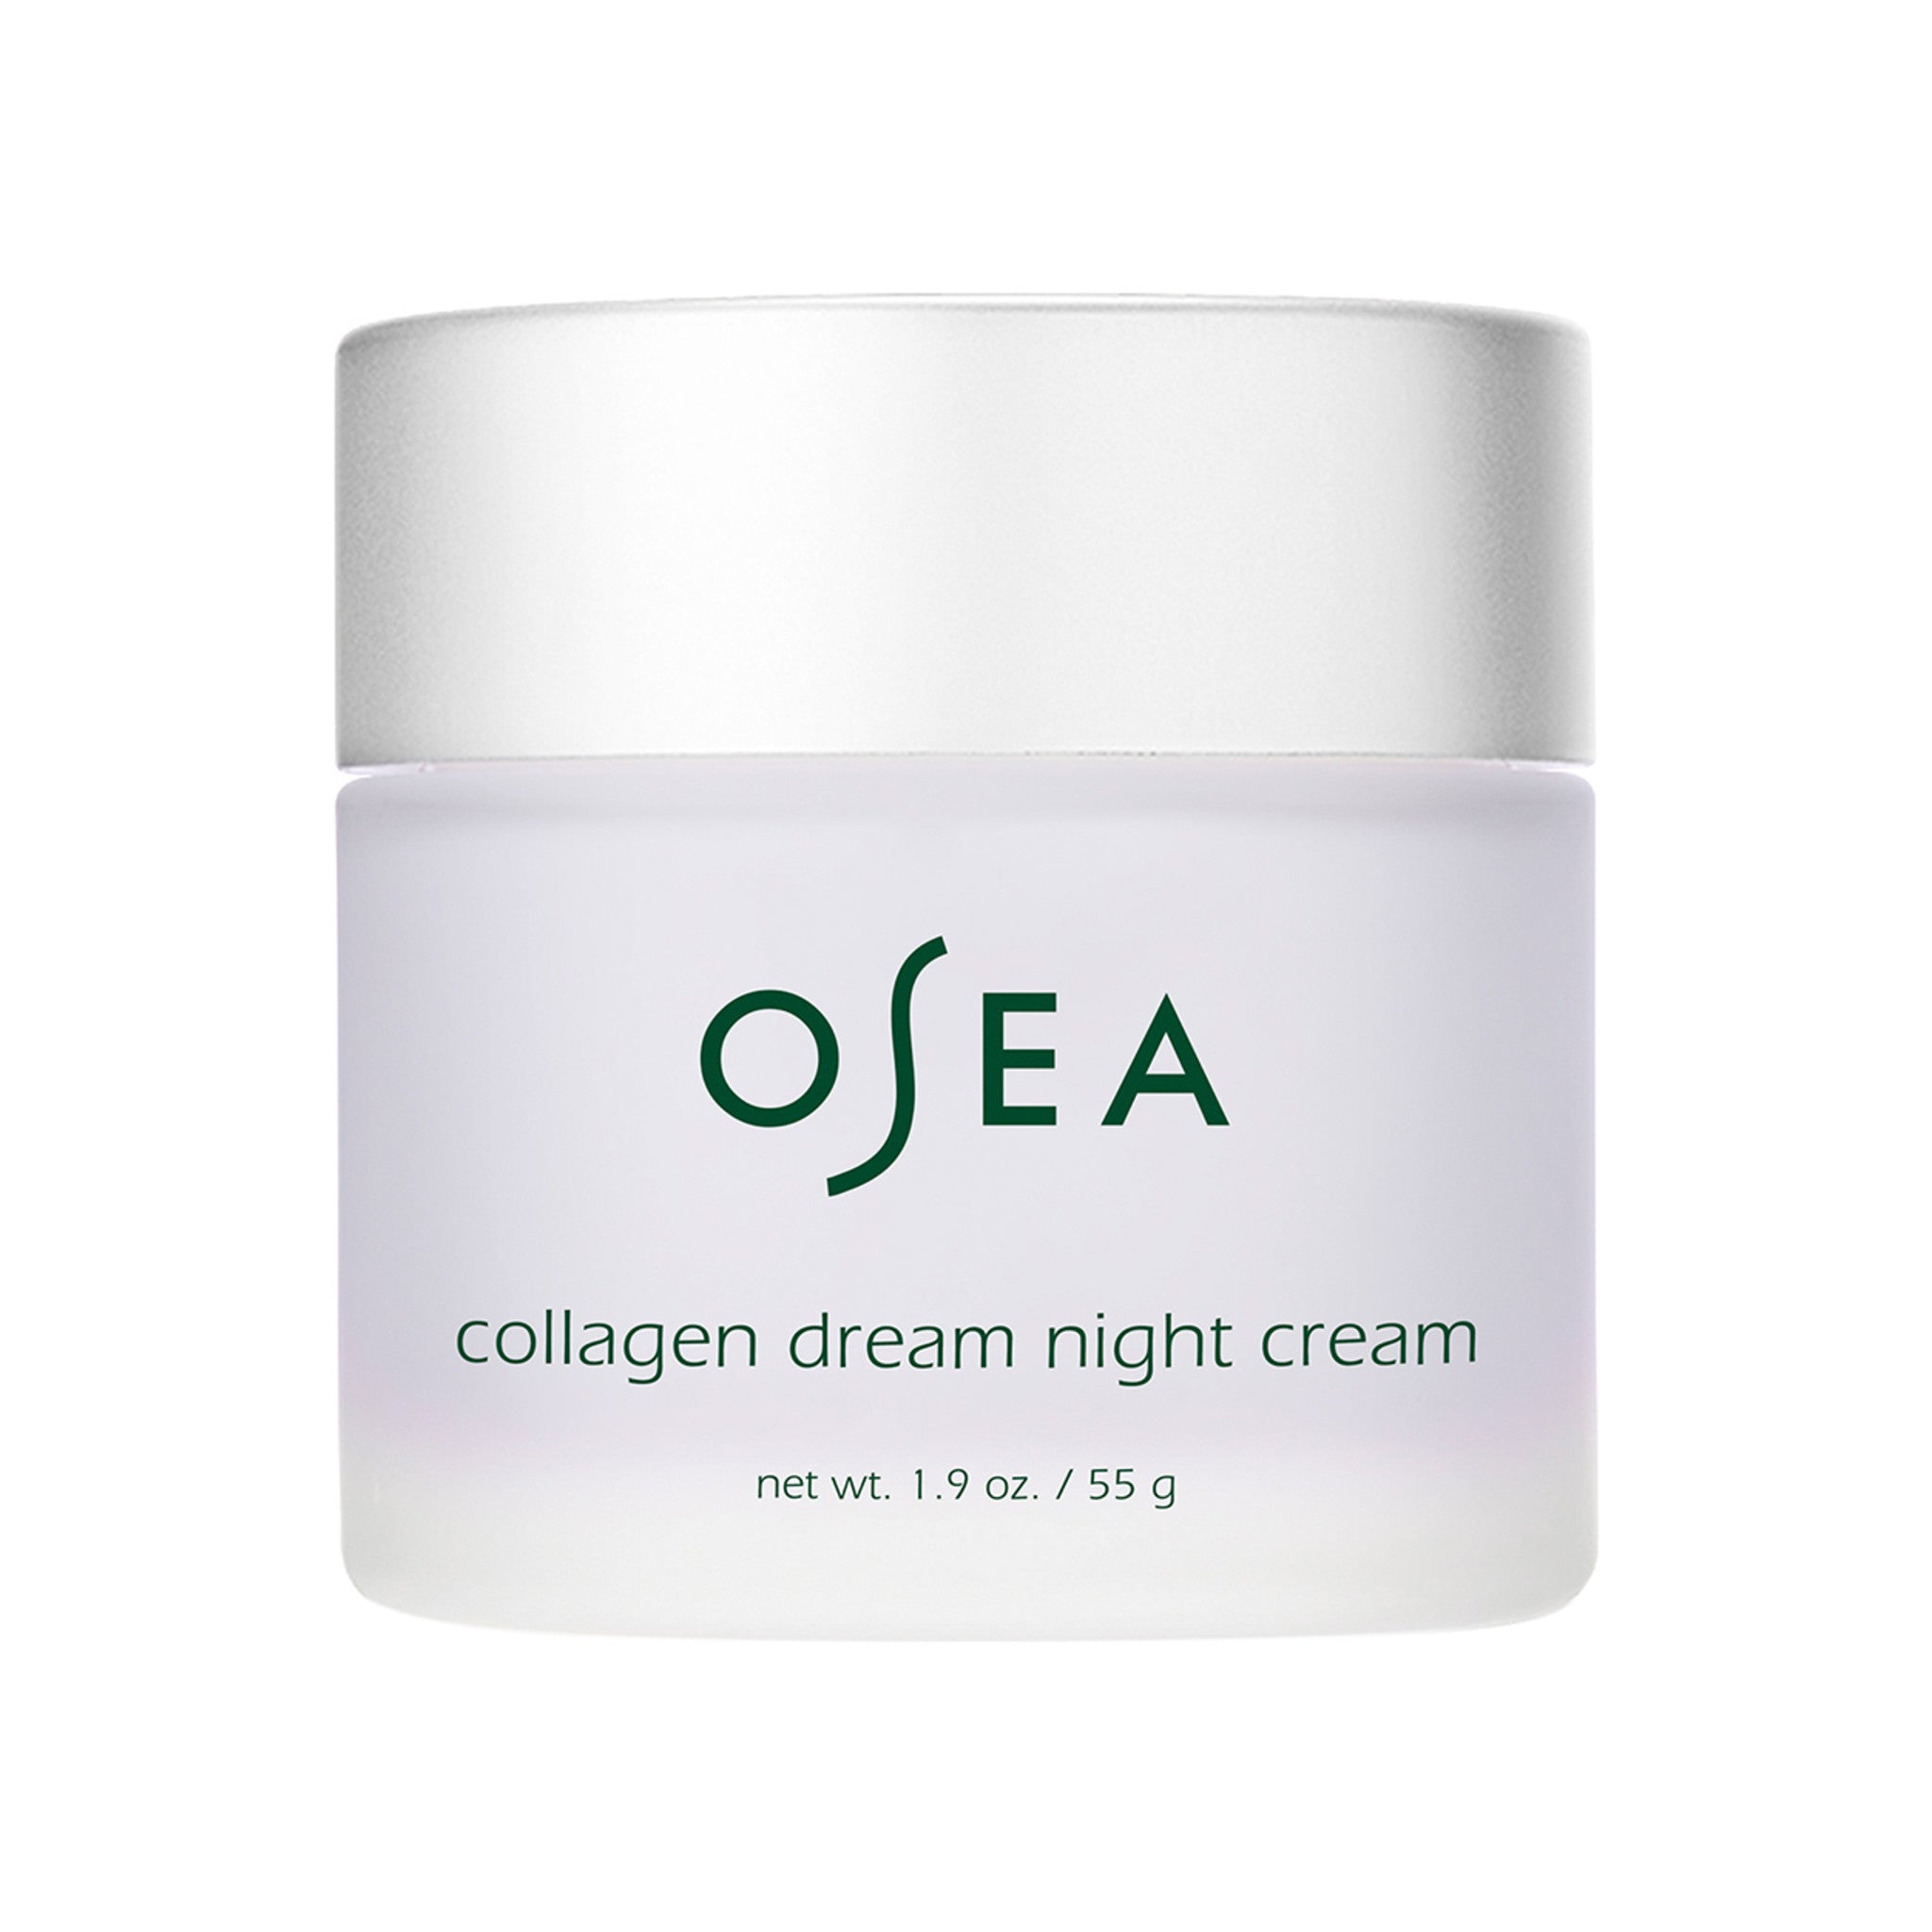 OSEA Collagen Dream Night Cream main image.